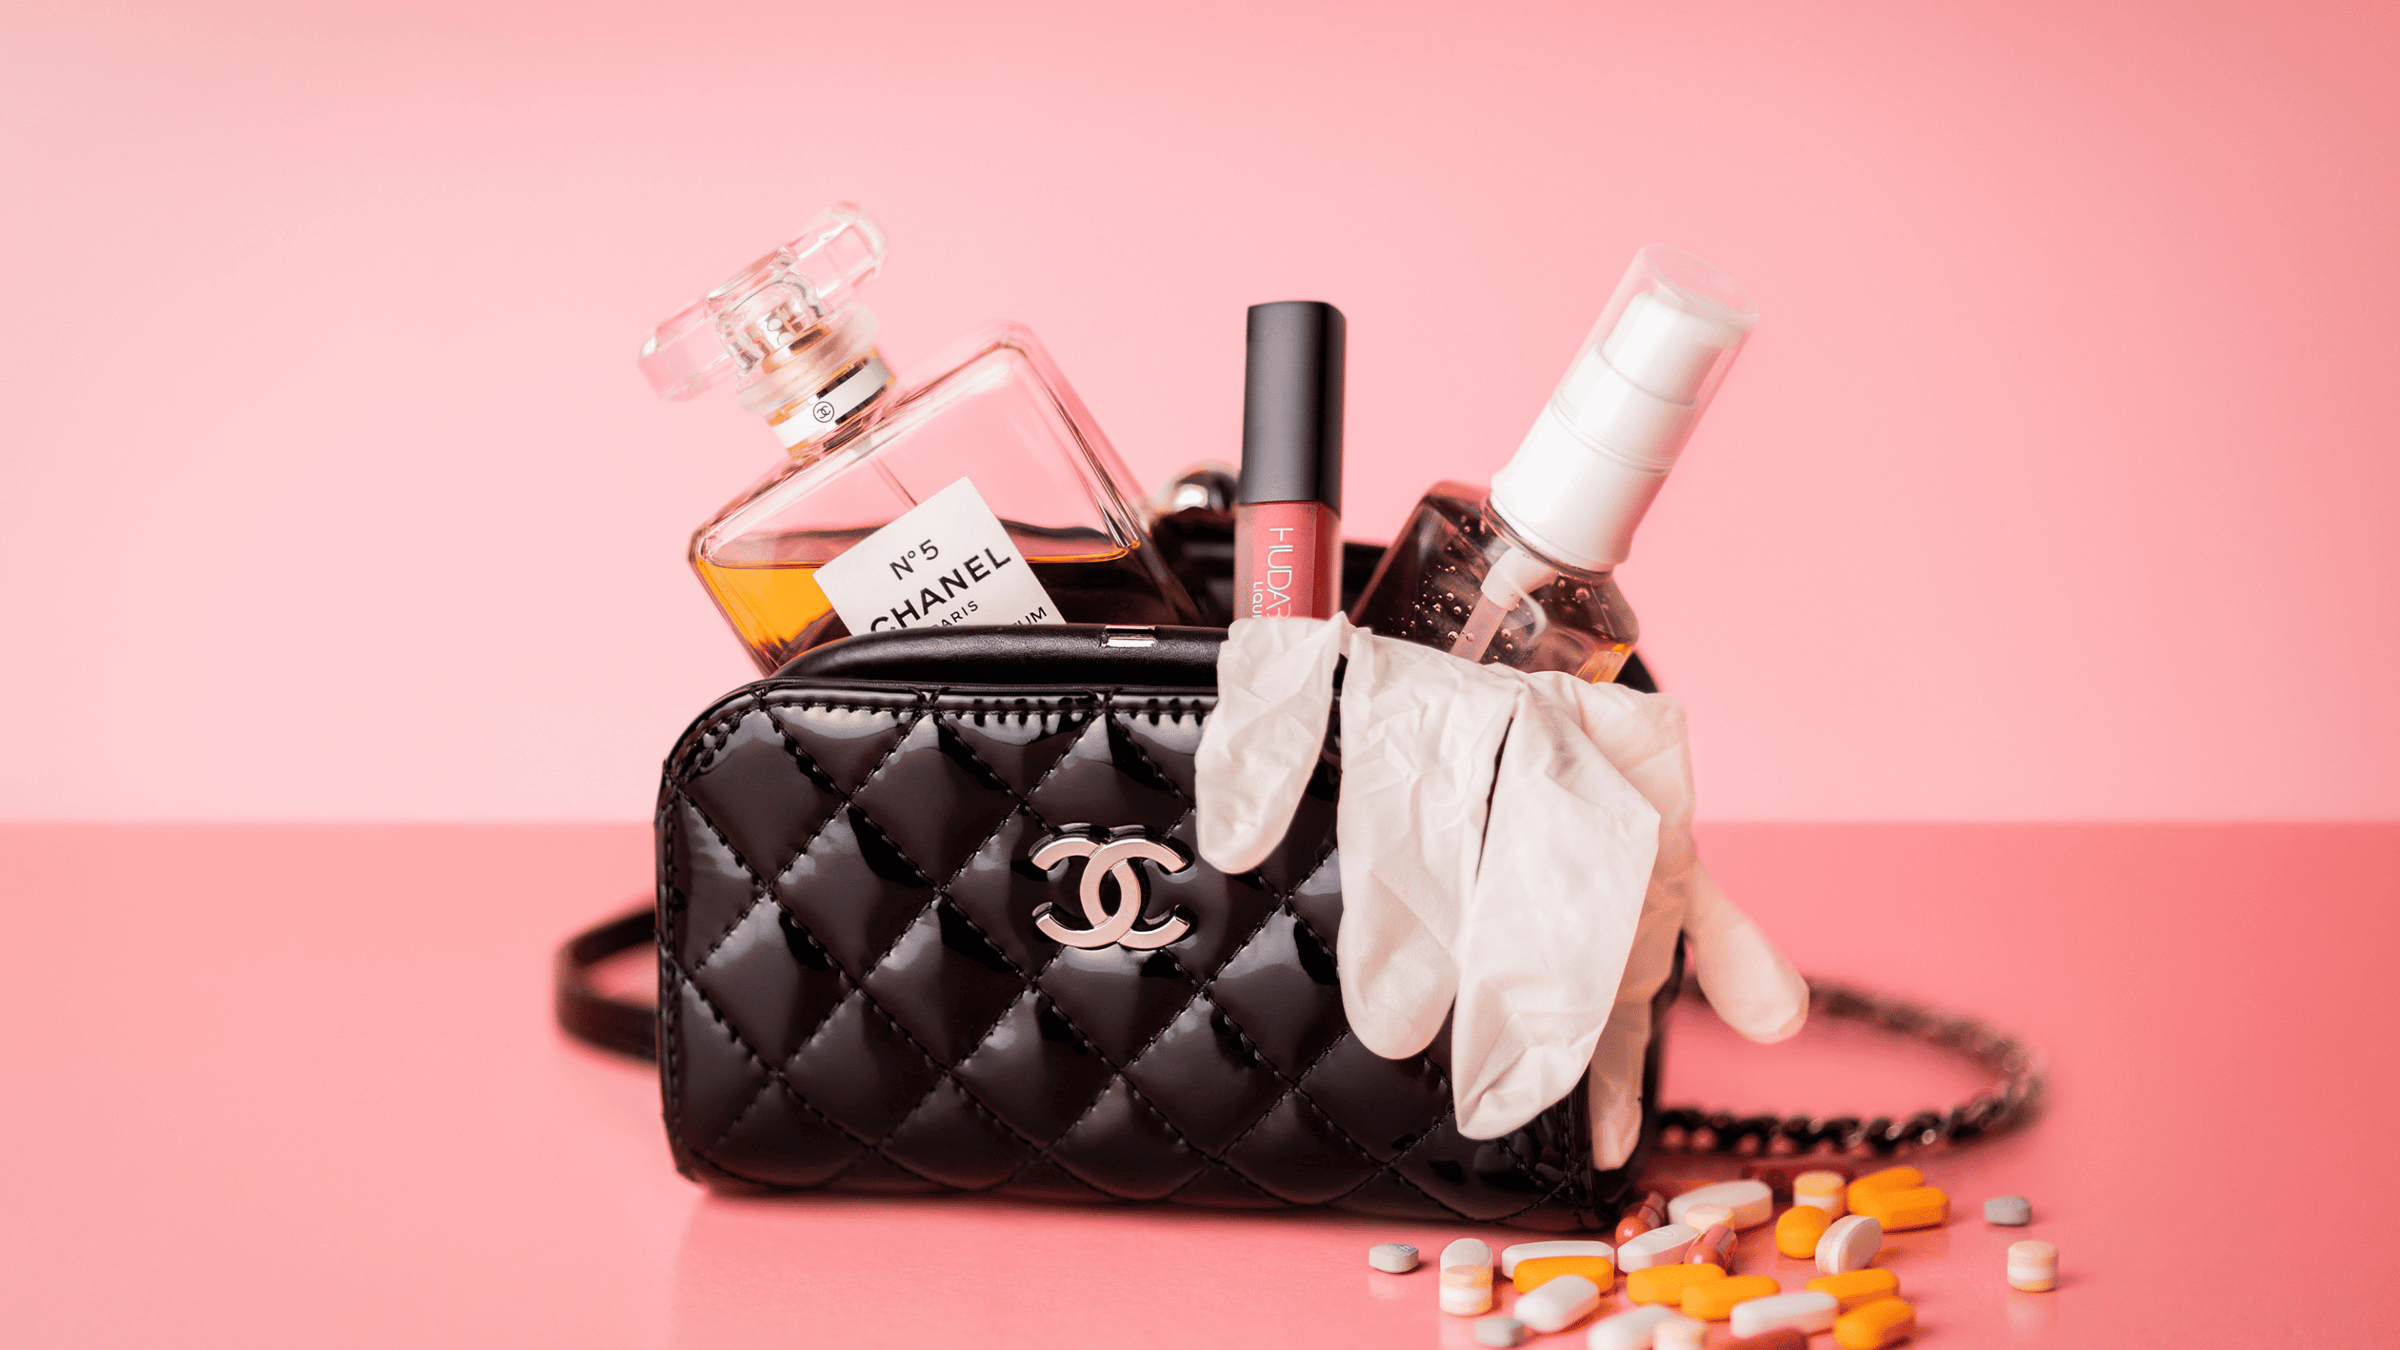 Chanel parfym som ligger i en väska